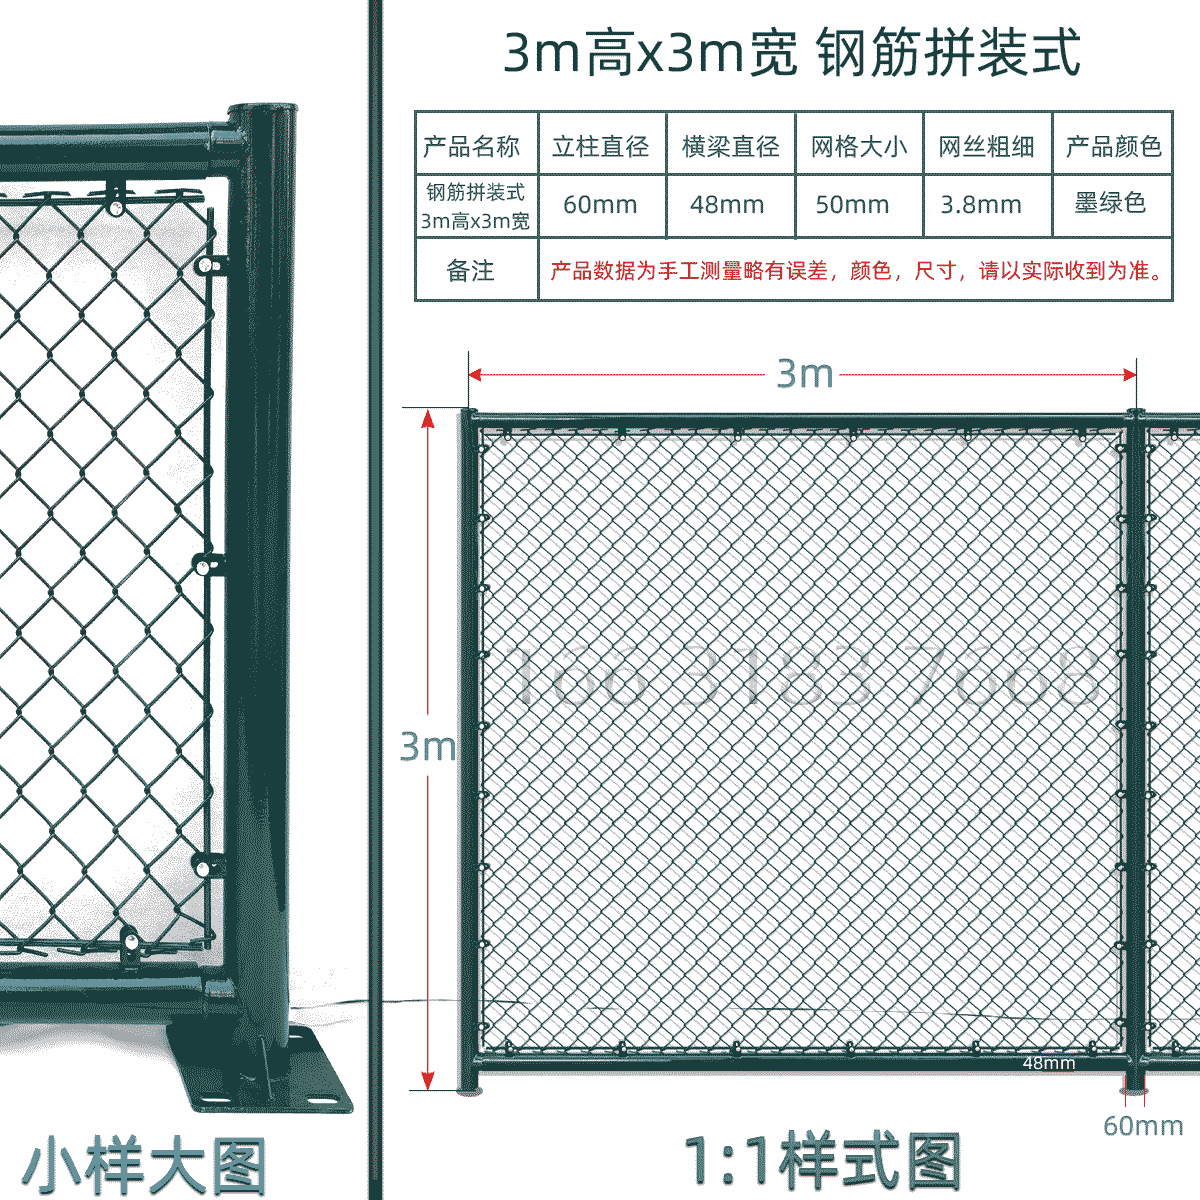 3m高x3m宽钢筋拼装式球场围栏网